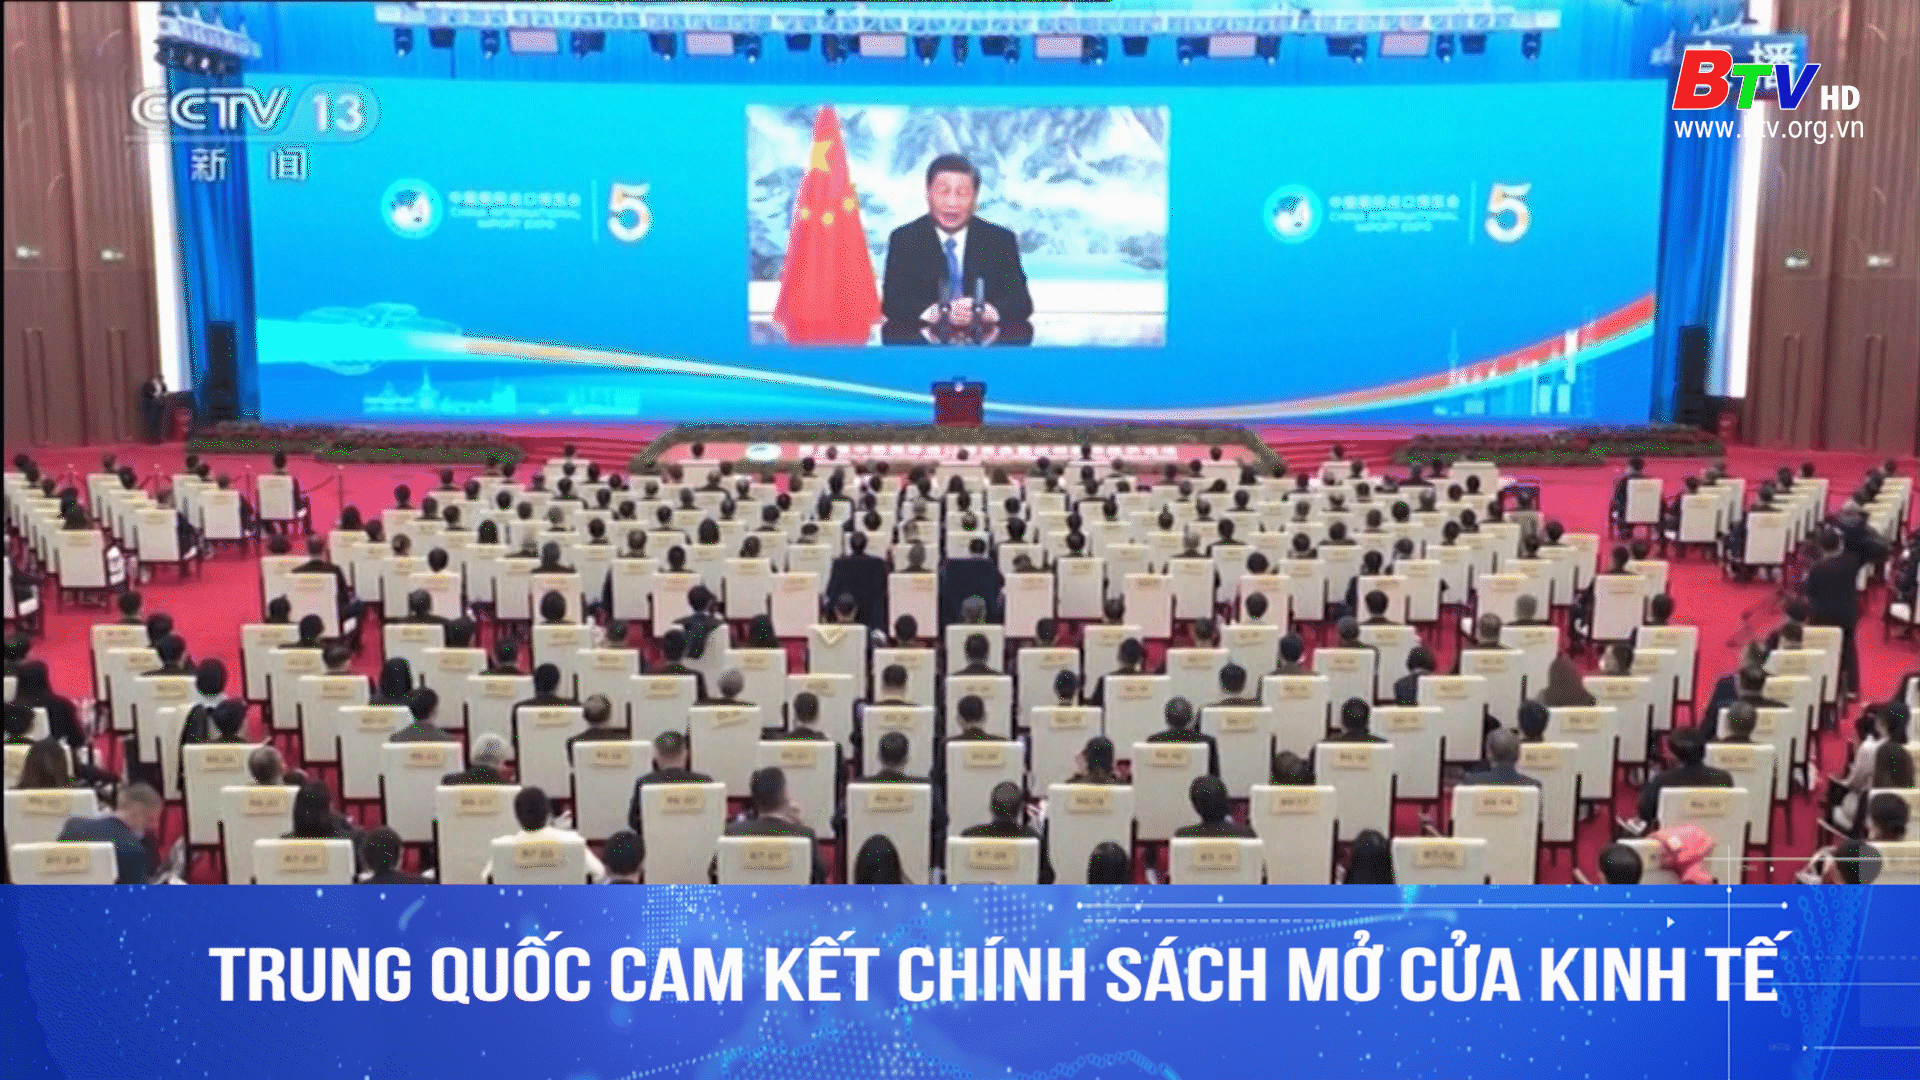 Trung Quốc cam kết chính sách mở cửa kinh tế